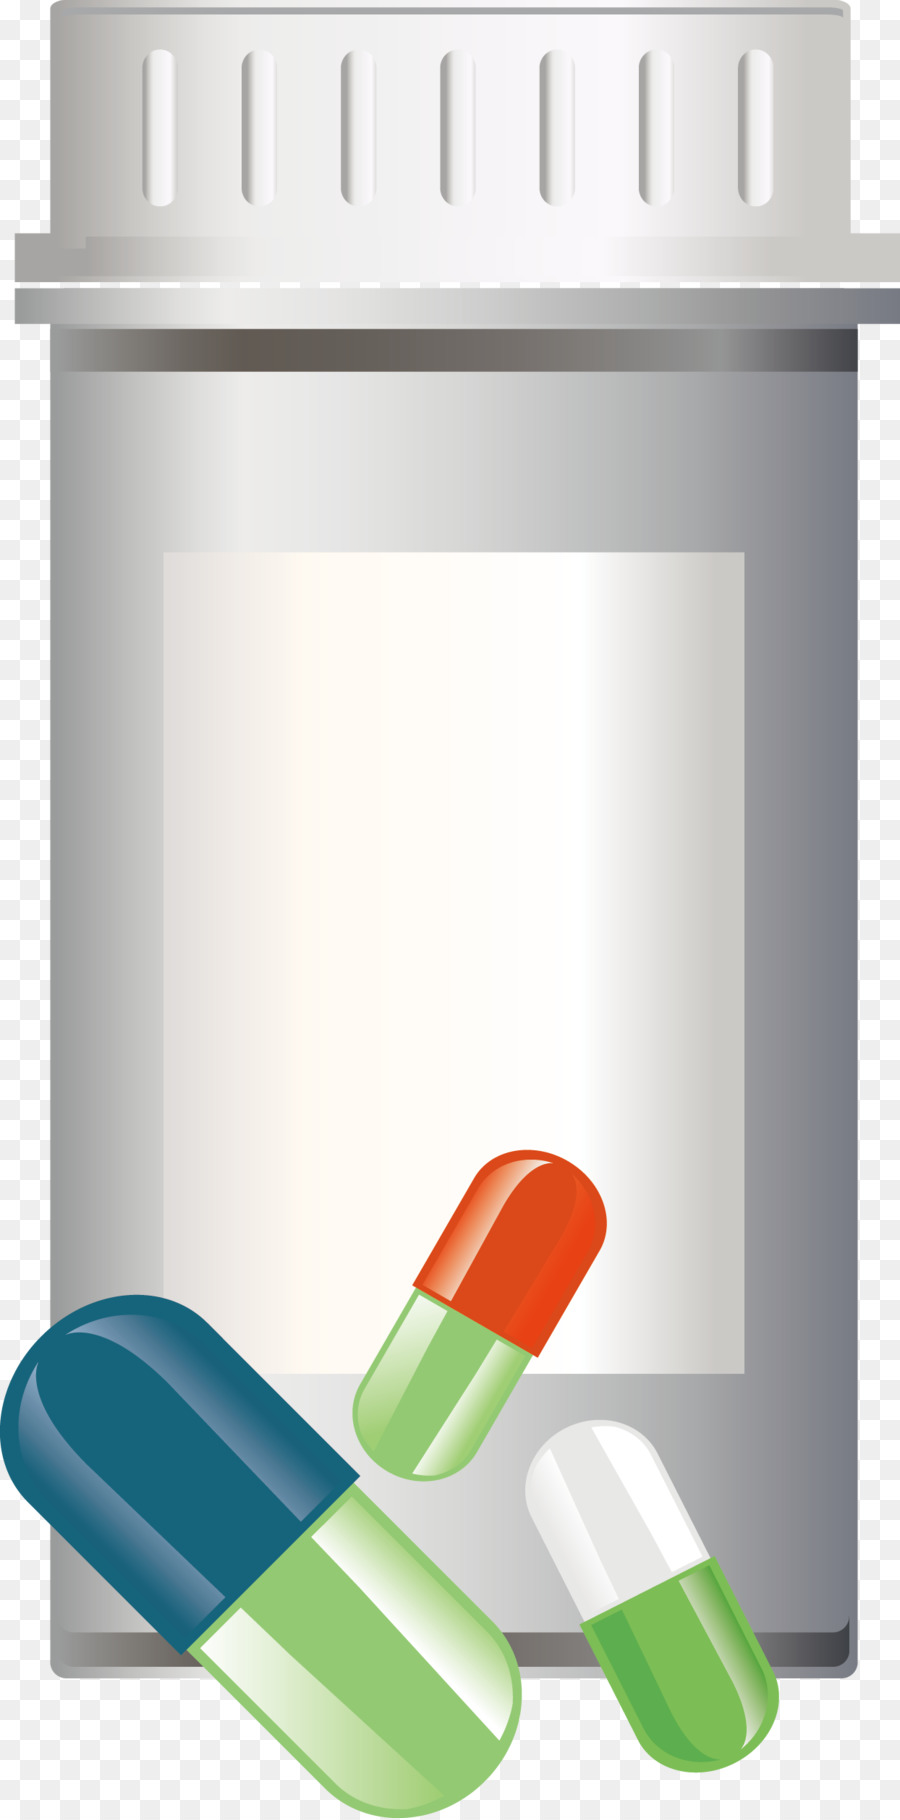 Dược phẩm, thuốc Thô thuốc - Uống Thuốc dược Khoa học và công Nghệ các yếu Tố